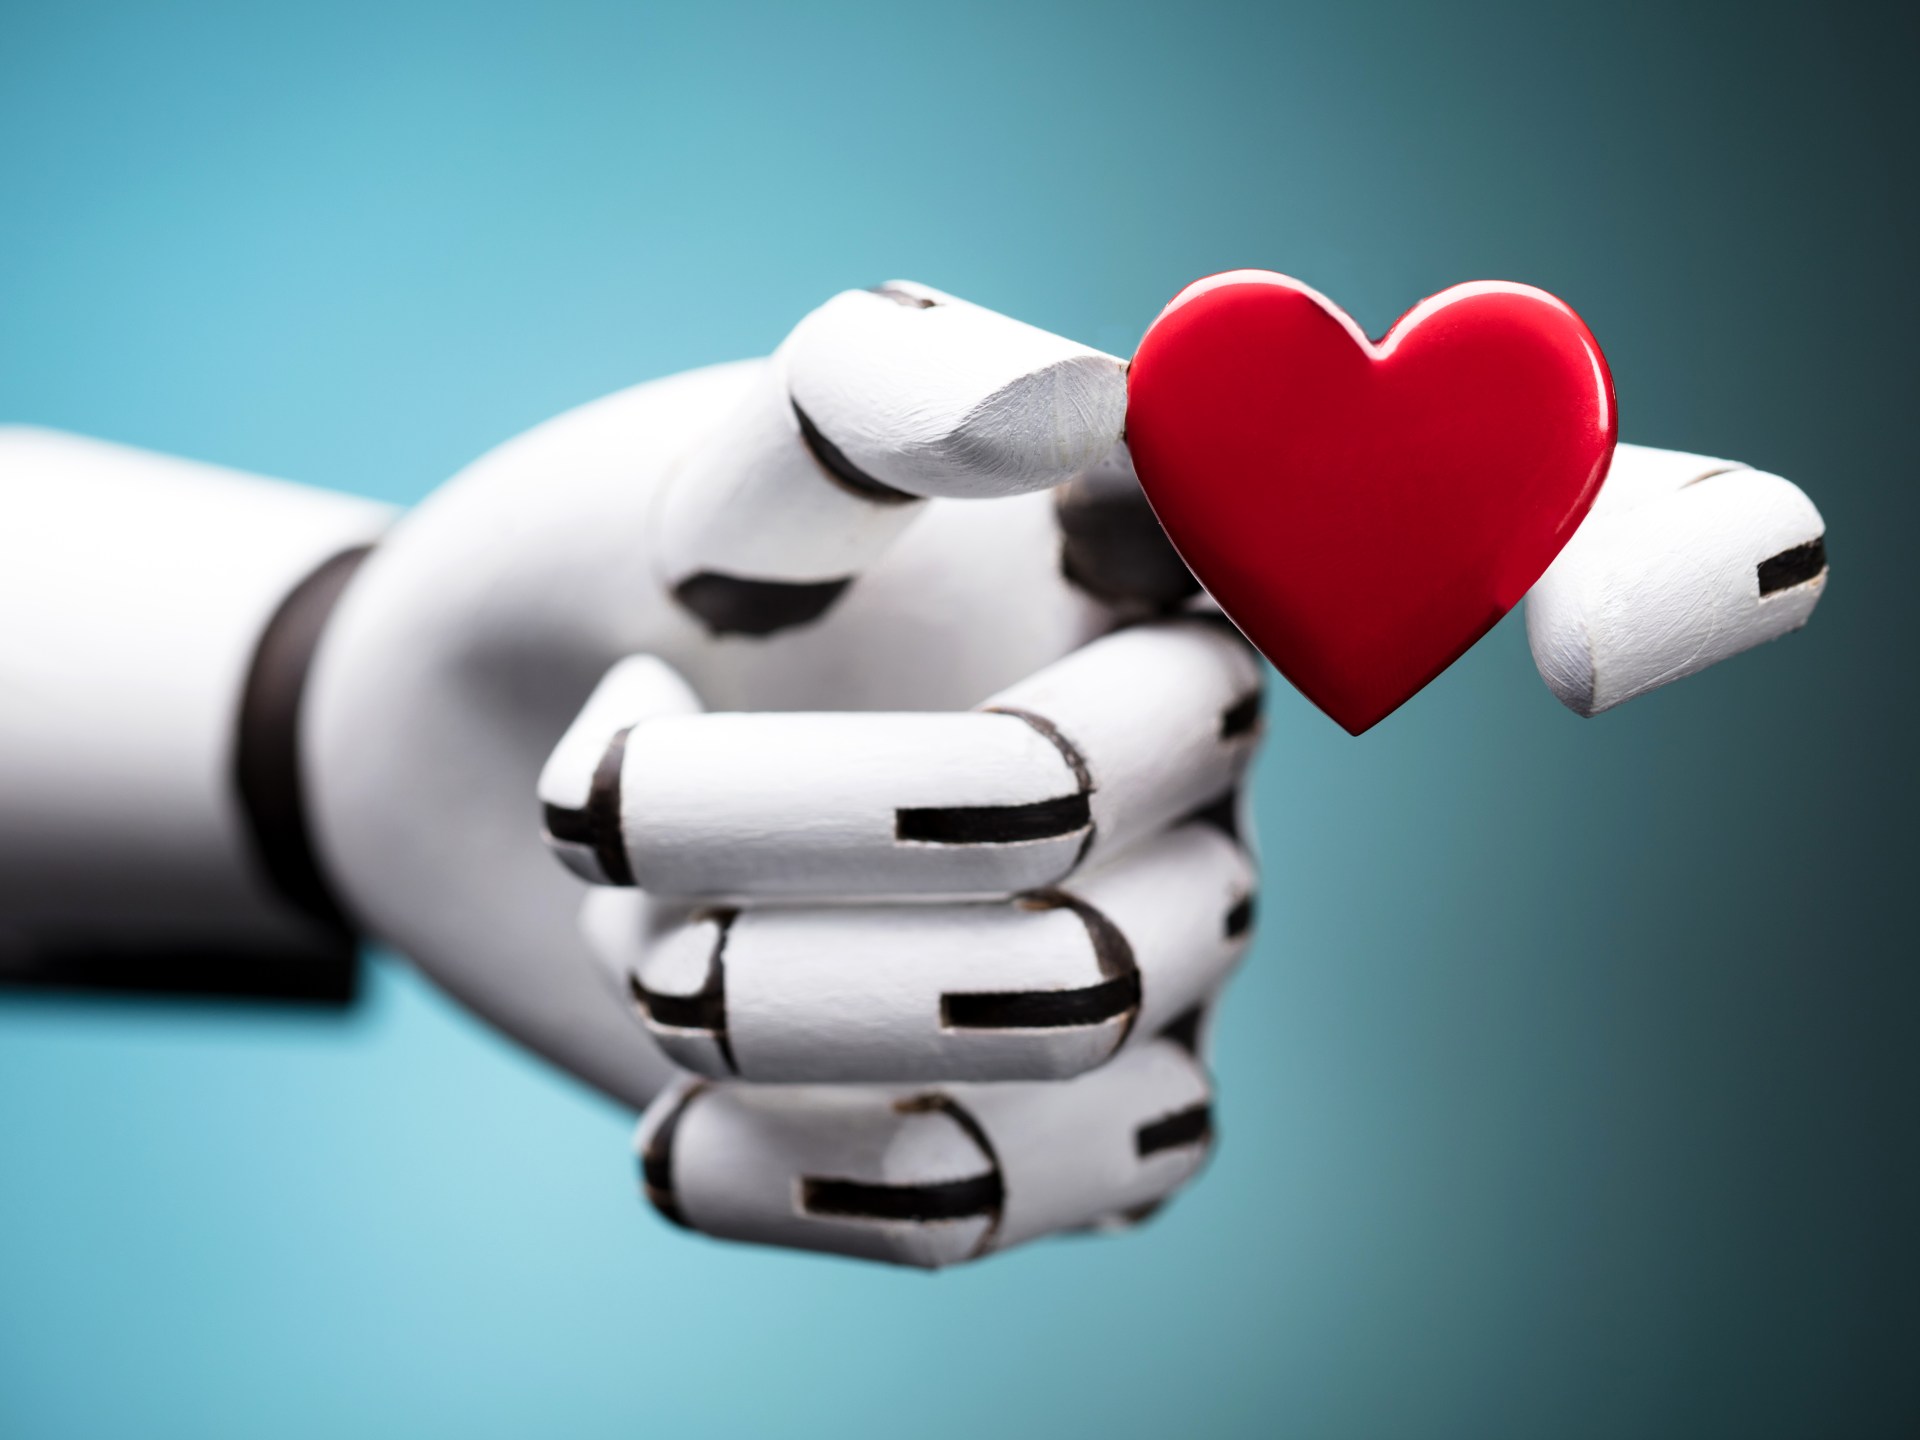 تحذير للذين يواعدون برامج الذكاء الاصطناعي “الرومانسية” في عيد الحب | تكنولوجيا – البوكس نيوز